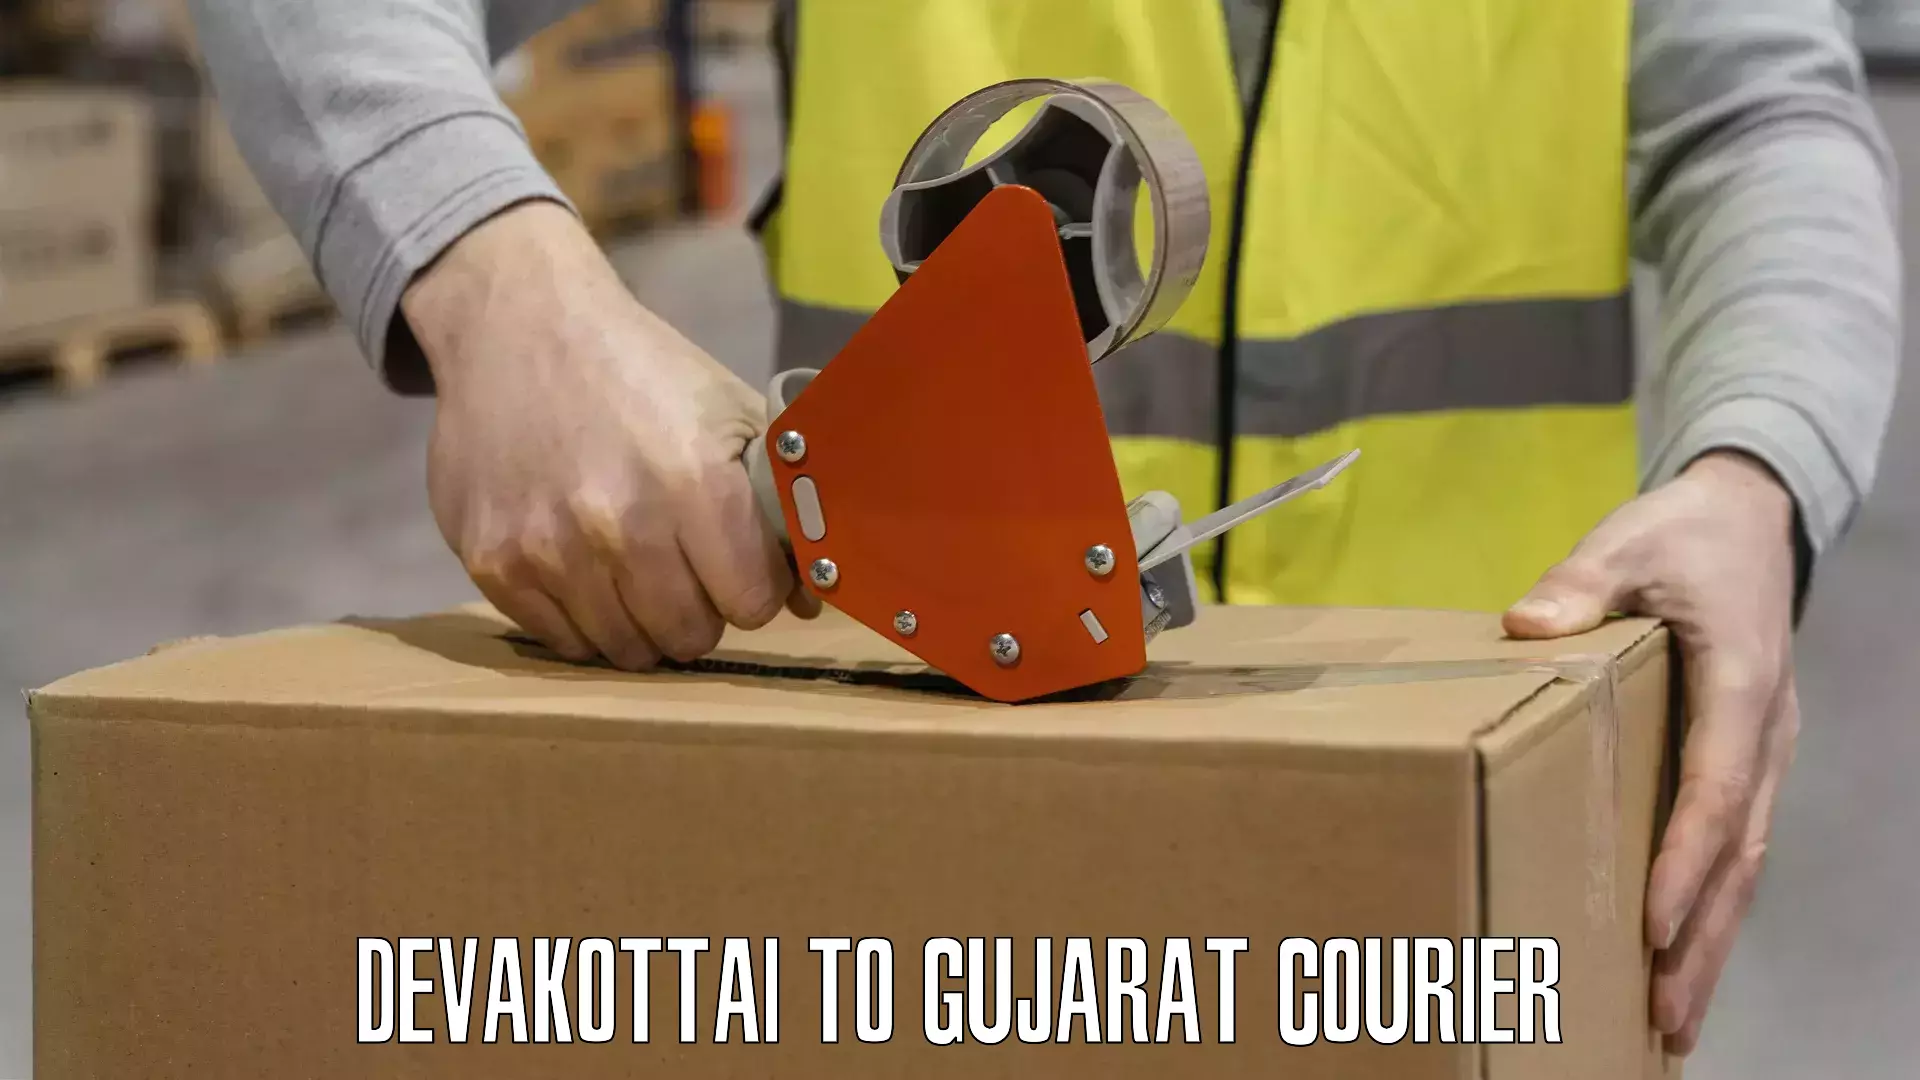 Professional courier services Devakottai to Gujarat